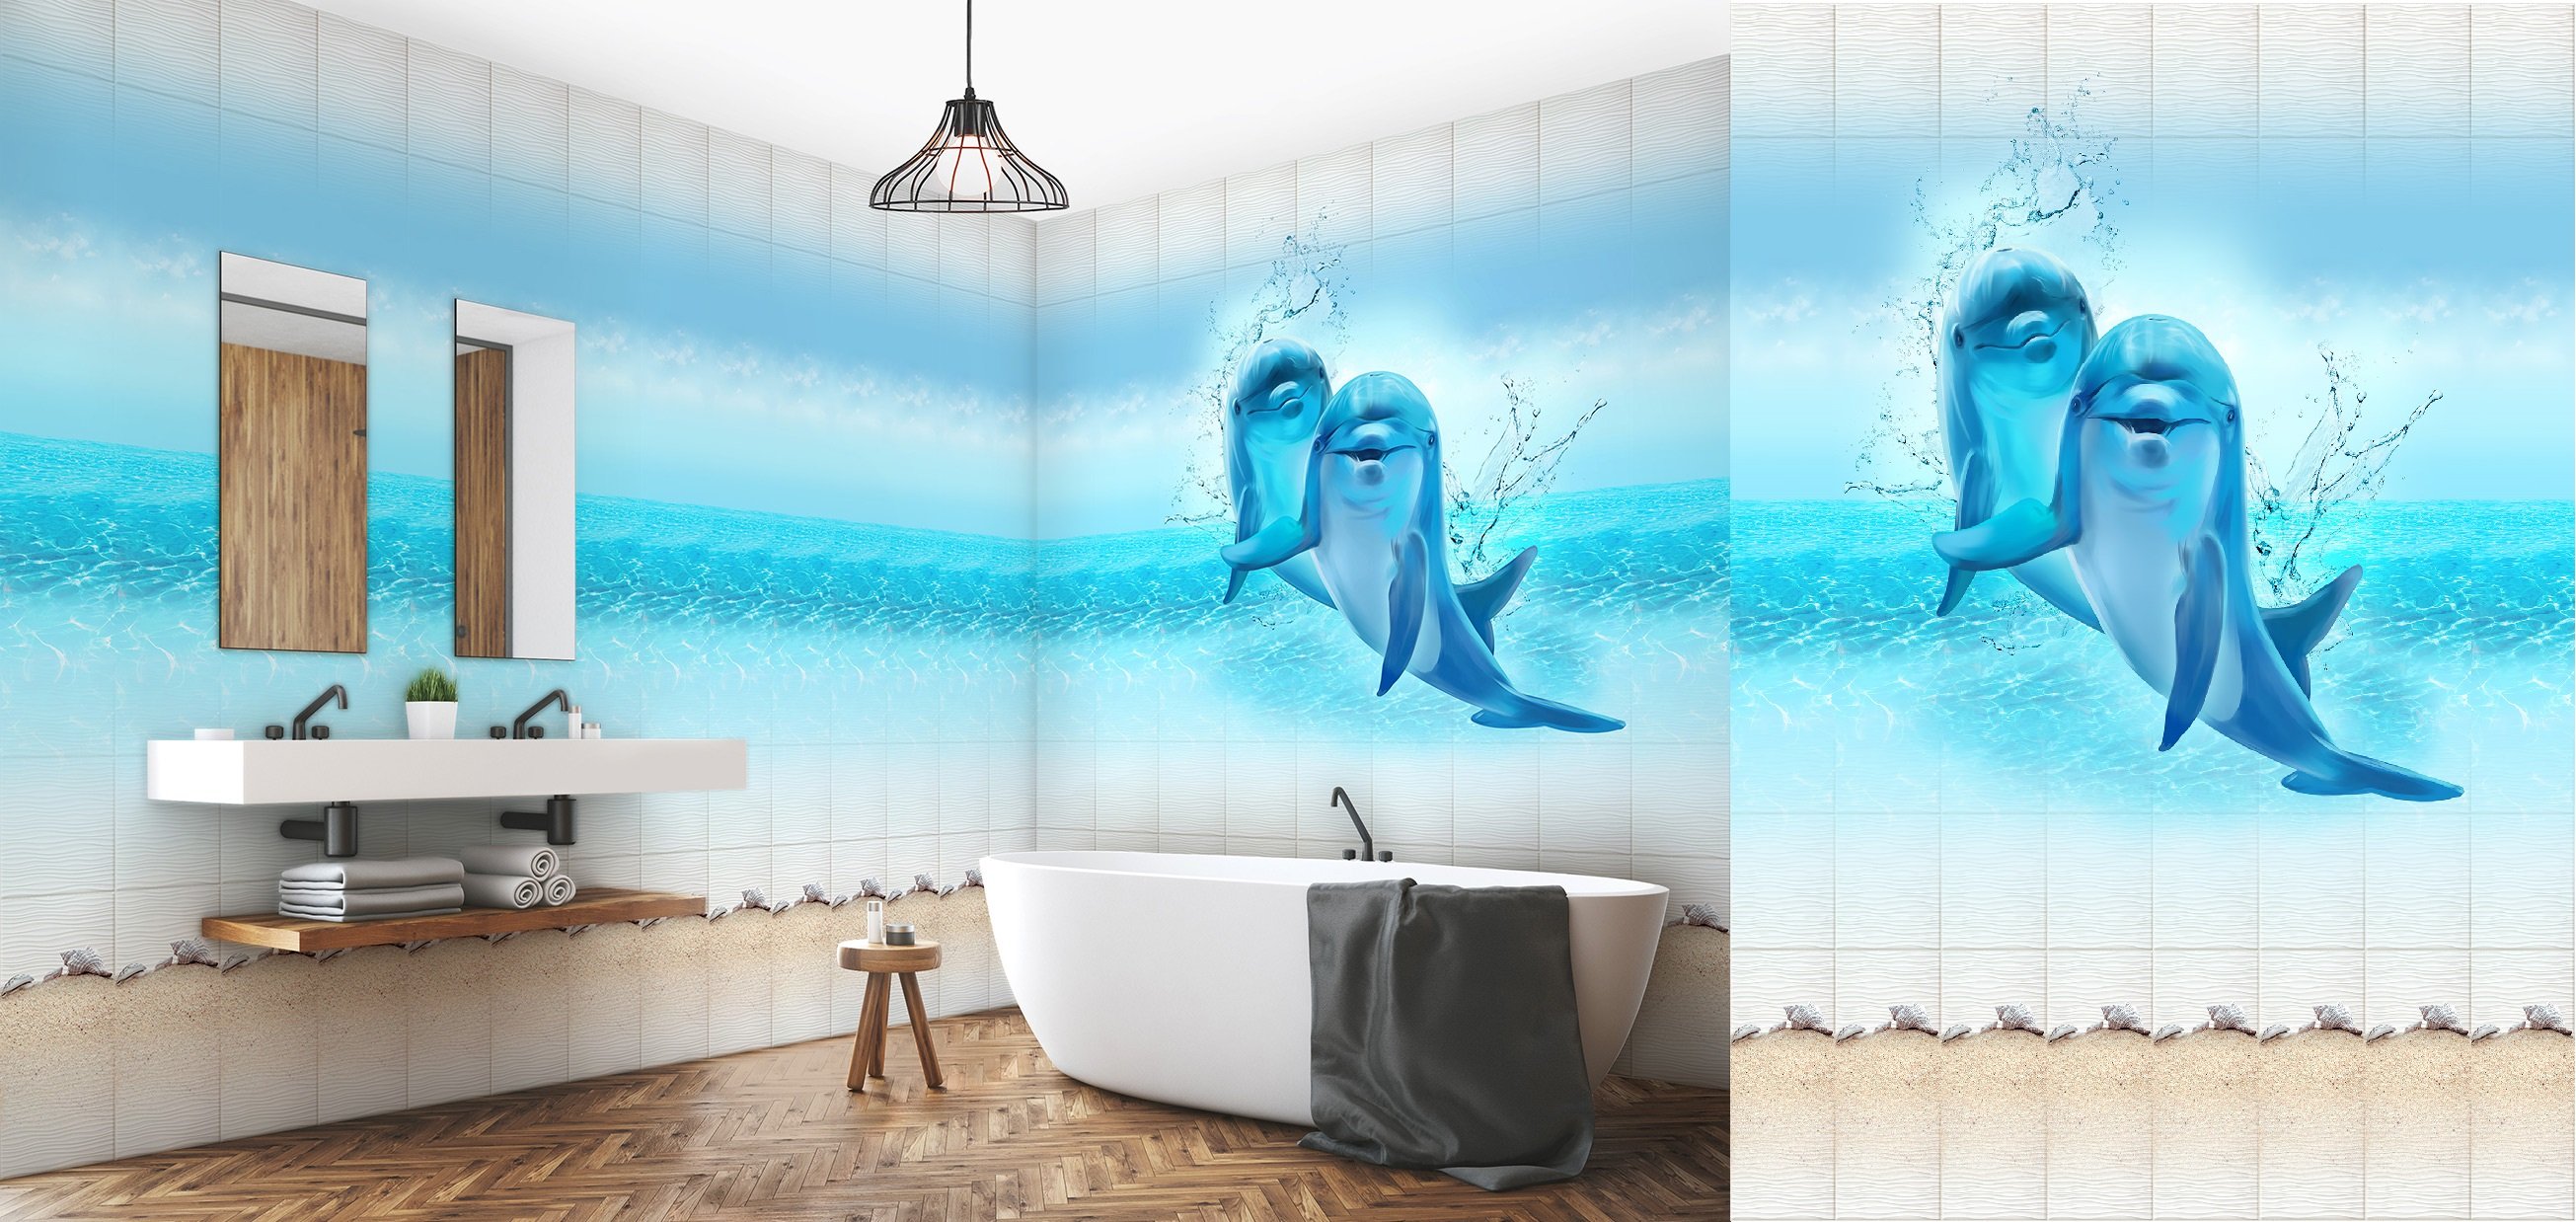 Озон панели для ванной. Стеновая панель голубая Лагуна Кронапласт дельфины. Панель ПВХ venta афалины. Панель ПВХ 3d, unique, голубая Лагуна. Панель ПВХ Discovery Веселые дельфины.